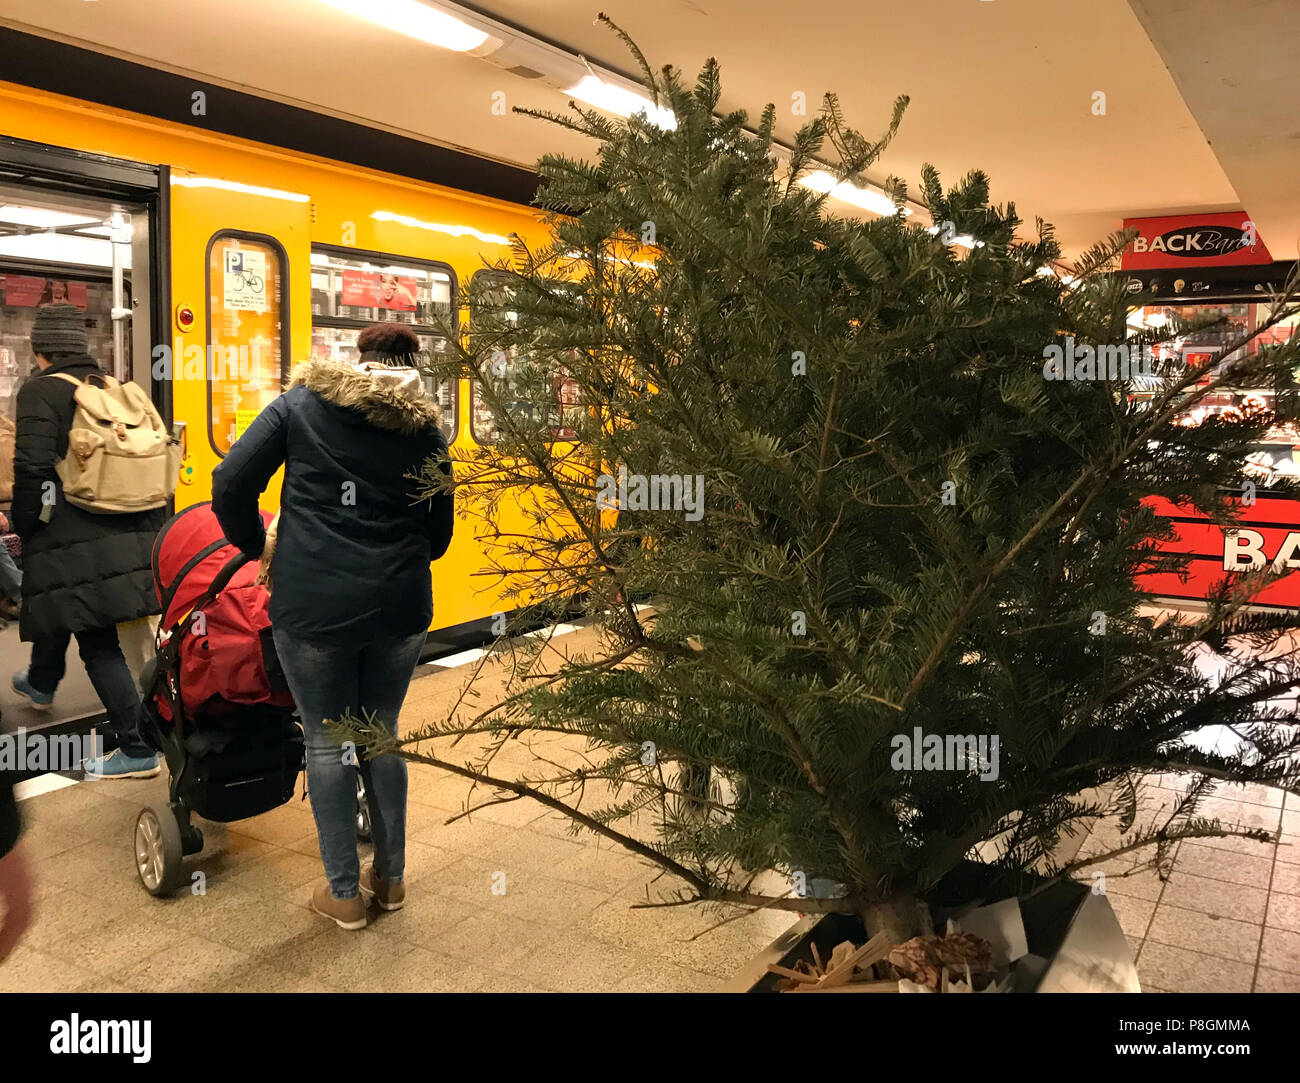 Berlín, Alemania, el árbol de Navidad es en un bote de basura en una estación de metro Foto de stock